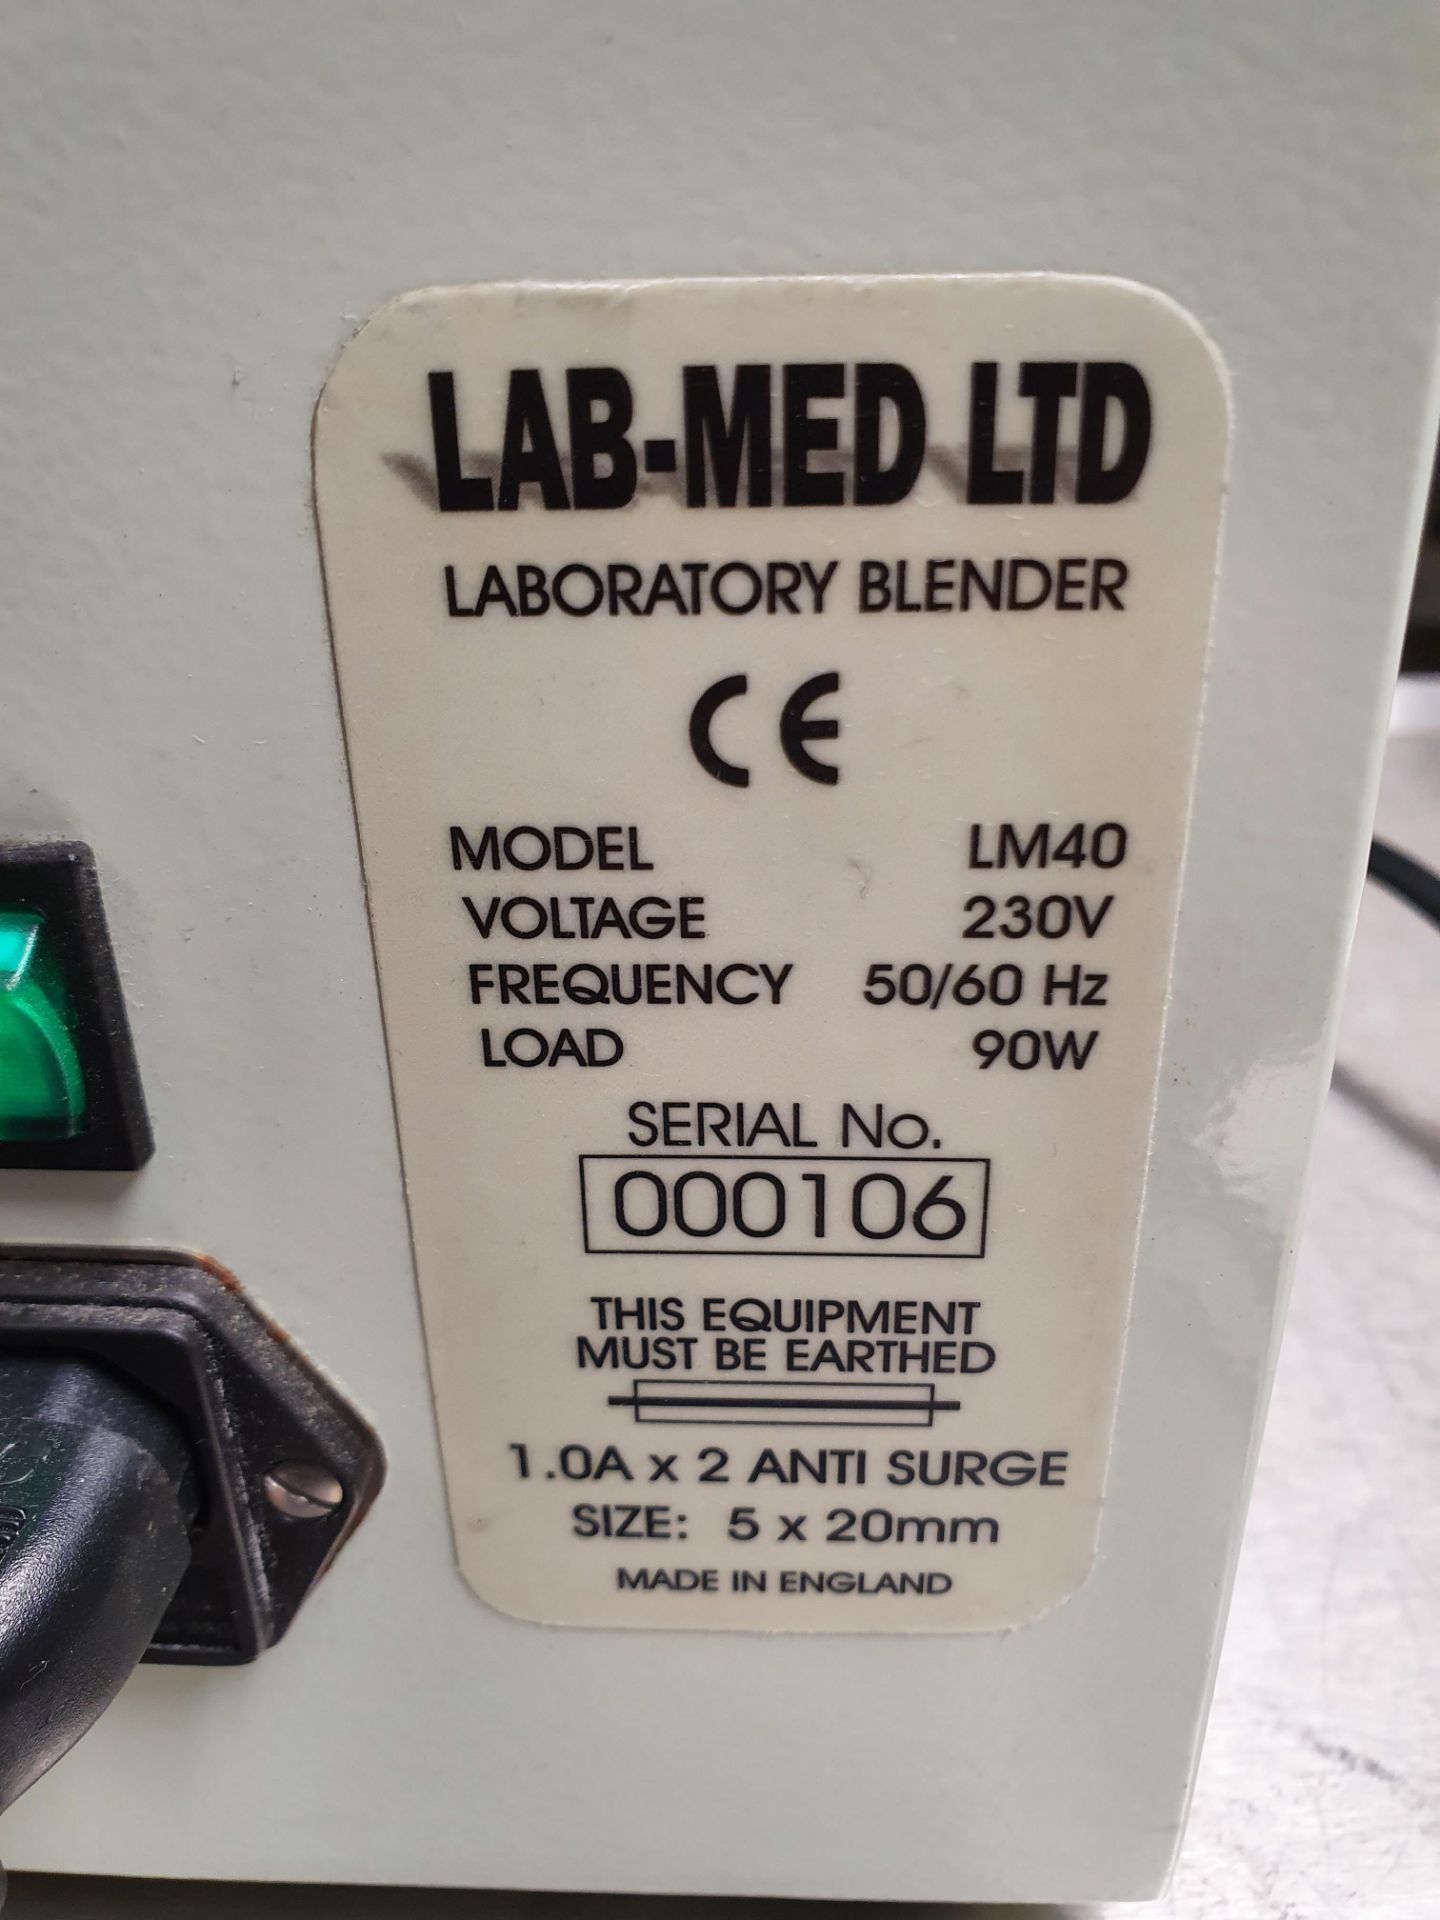 Lab Med Ltd Laboratory Blender Model LM40 - Image 3 of 3